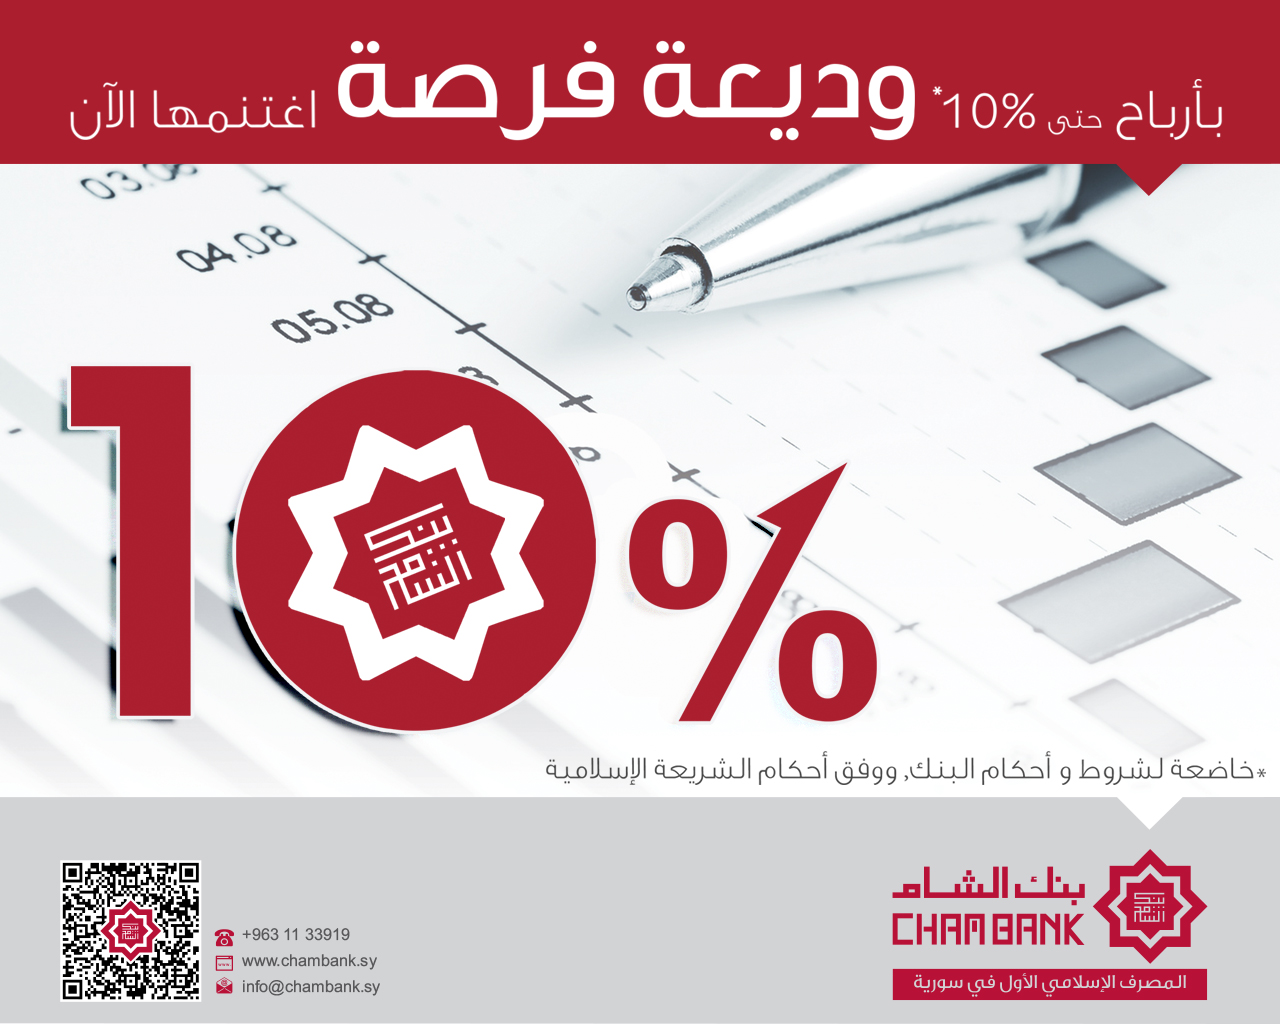 دام برس : دام برس | بنك الشام يقدم فرصاً استثمارية متميزة مع وديعة فرصة